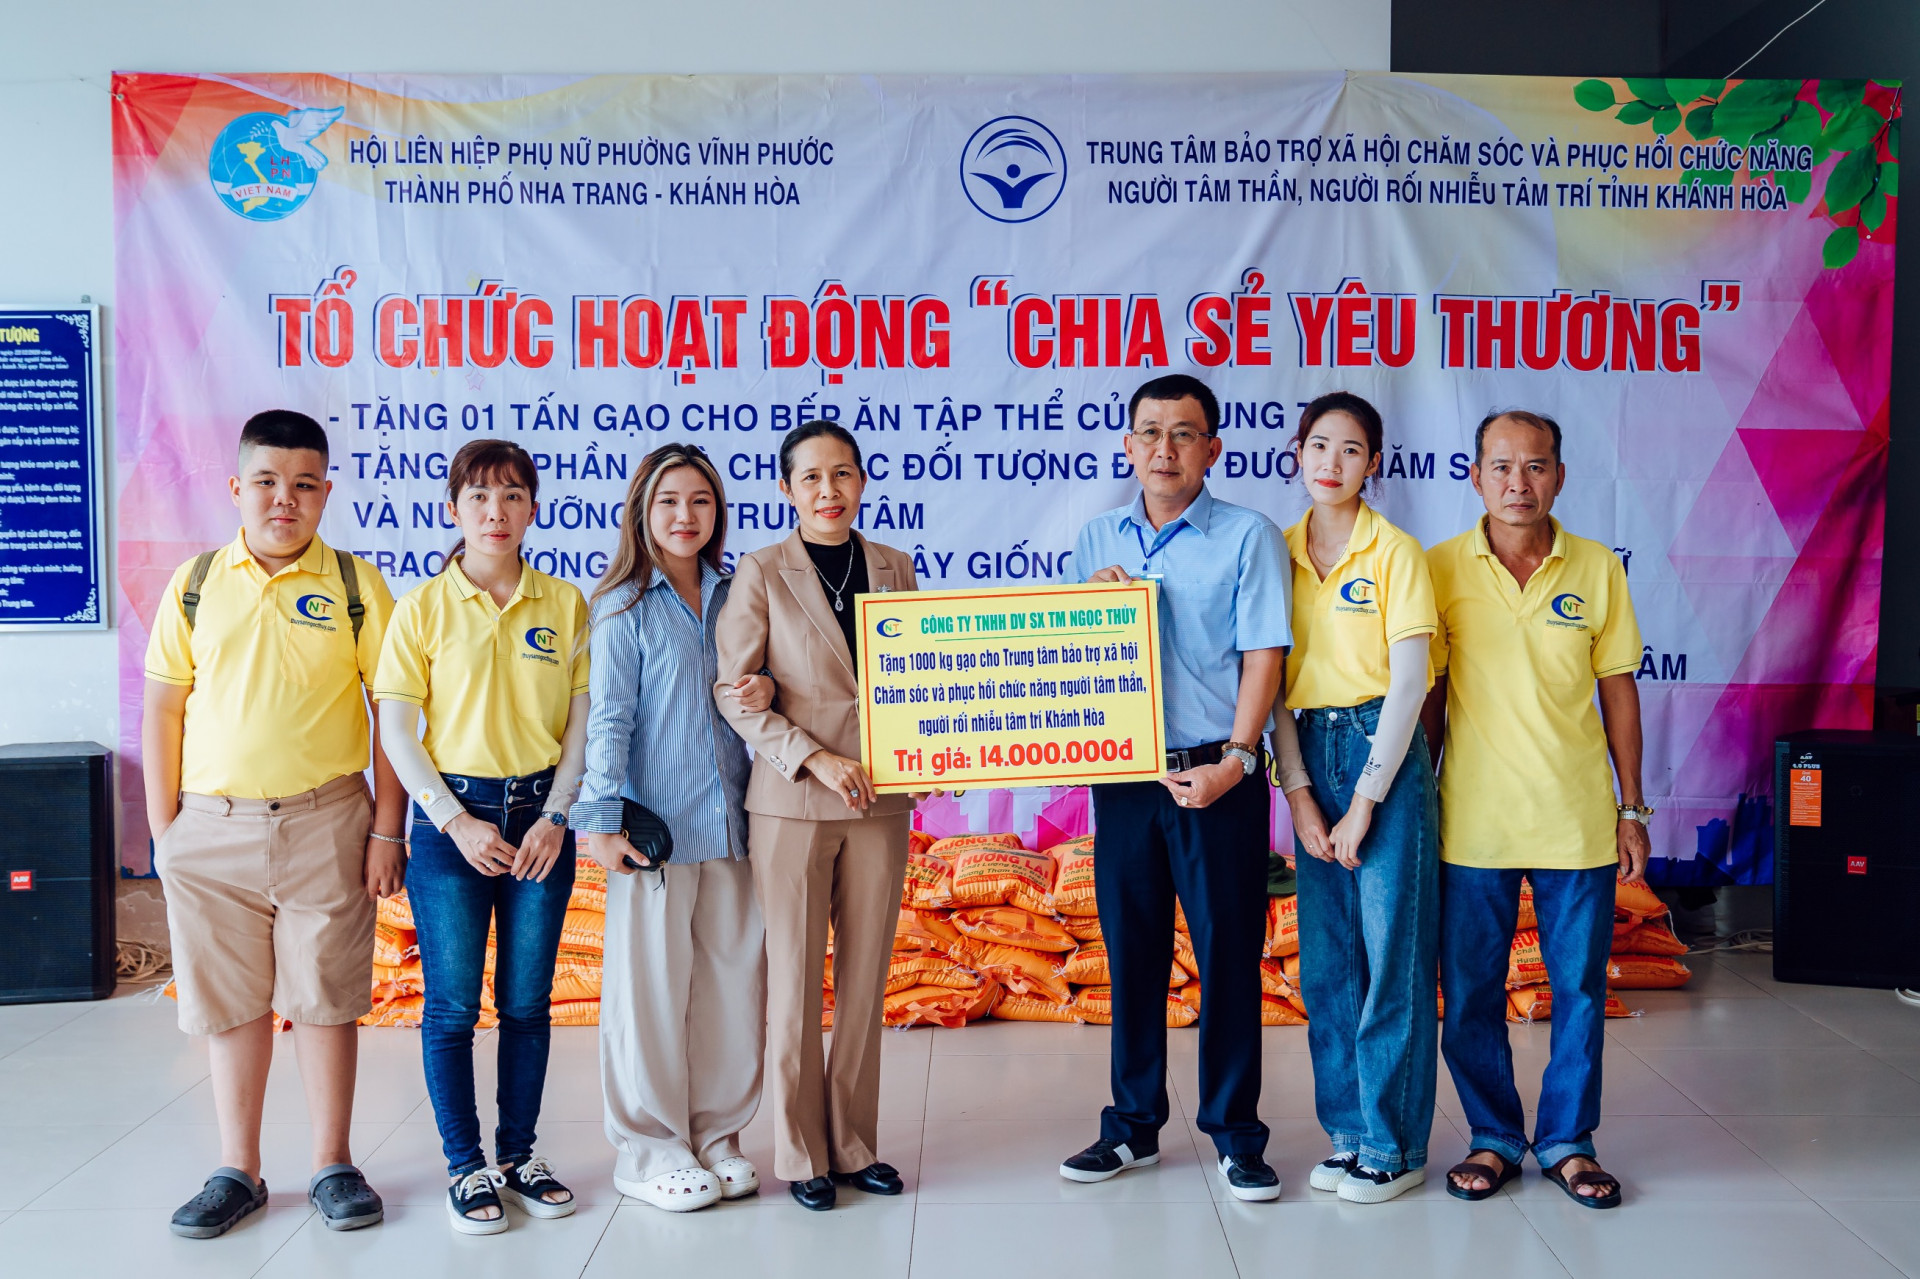 Trao biểu trưng 1 tấn gạo cho đại diện Trung tâm Bảo trợ xã hội Chăm sóc và Phục hồi chức năng người tâm thần, người rối nhiễu tâm trí tỉnh Khánh Hòa.